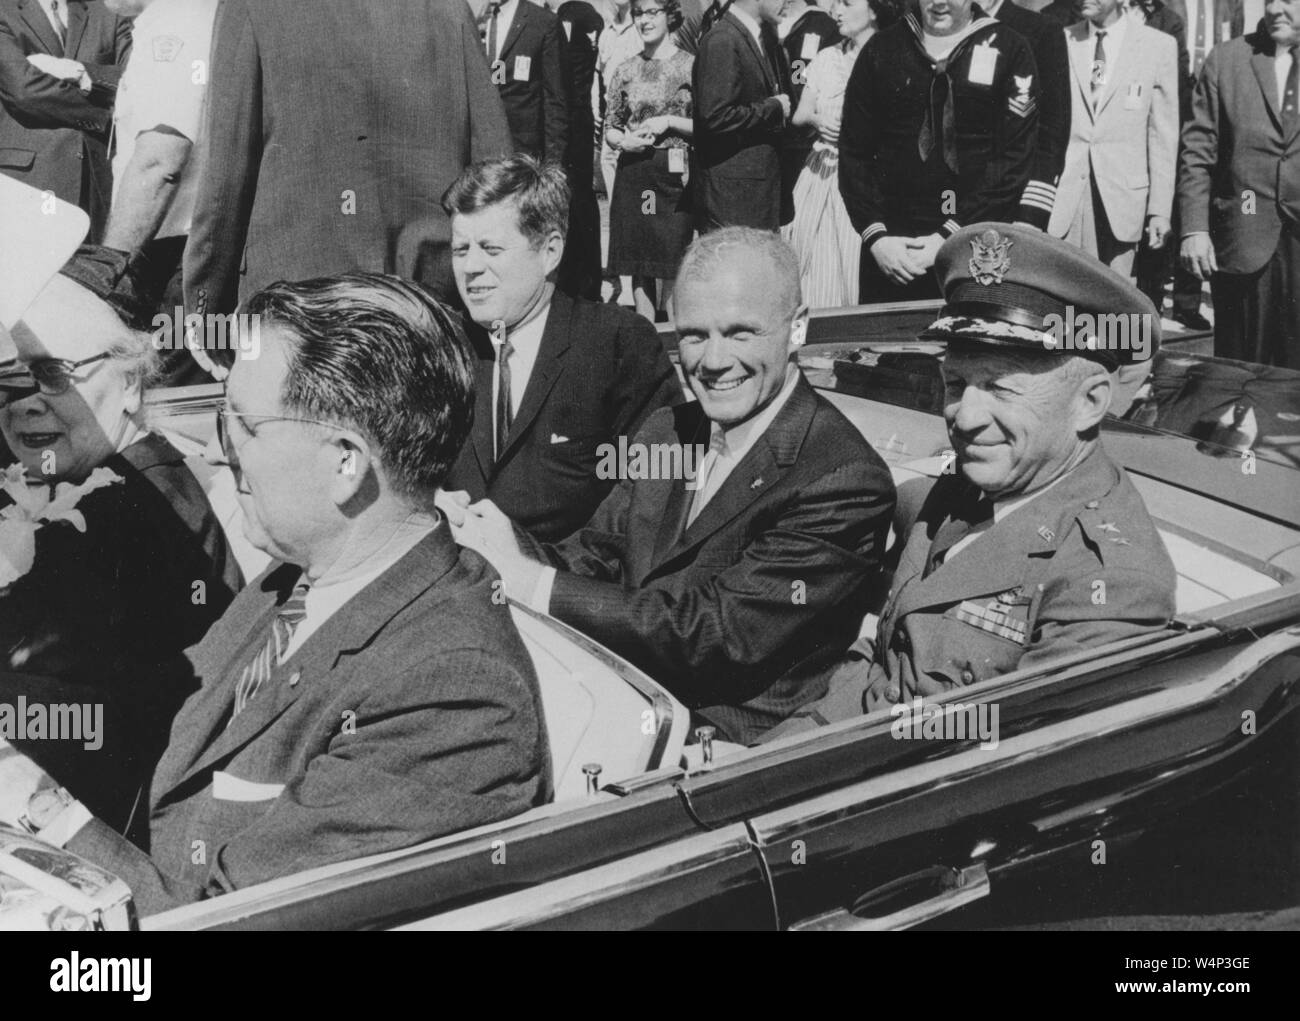 Il presidente John F Kennedy, John Glenn e General Leighton ho Davis in sella ad una vettura durante una Cocoa Beach parade, Cocoa Beach, Florida, 23 febbraio 1962. Immagine cortesia Nazionale Aeronautica e Spaziale Administration (NASA). () Foto Stock